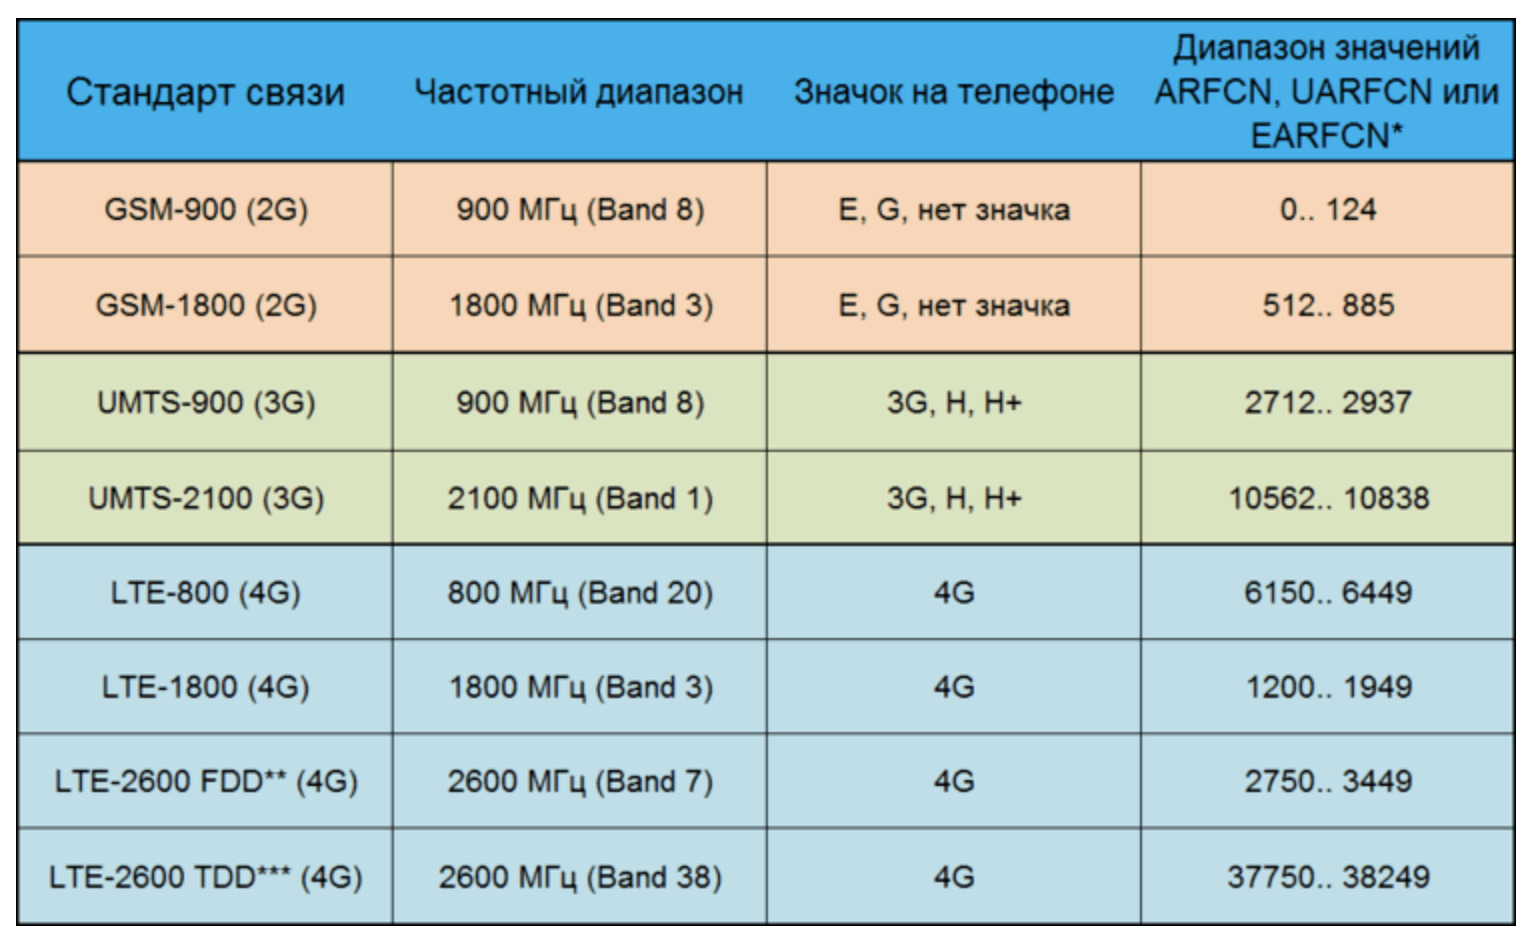 частотные диапазоны, используемые операторами для различных поколений сетей.